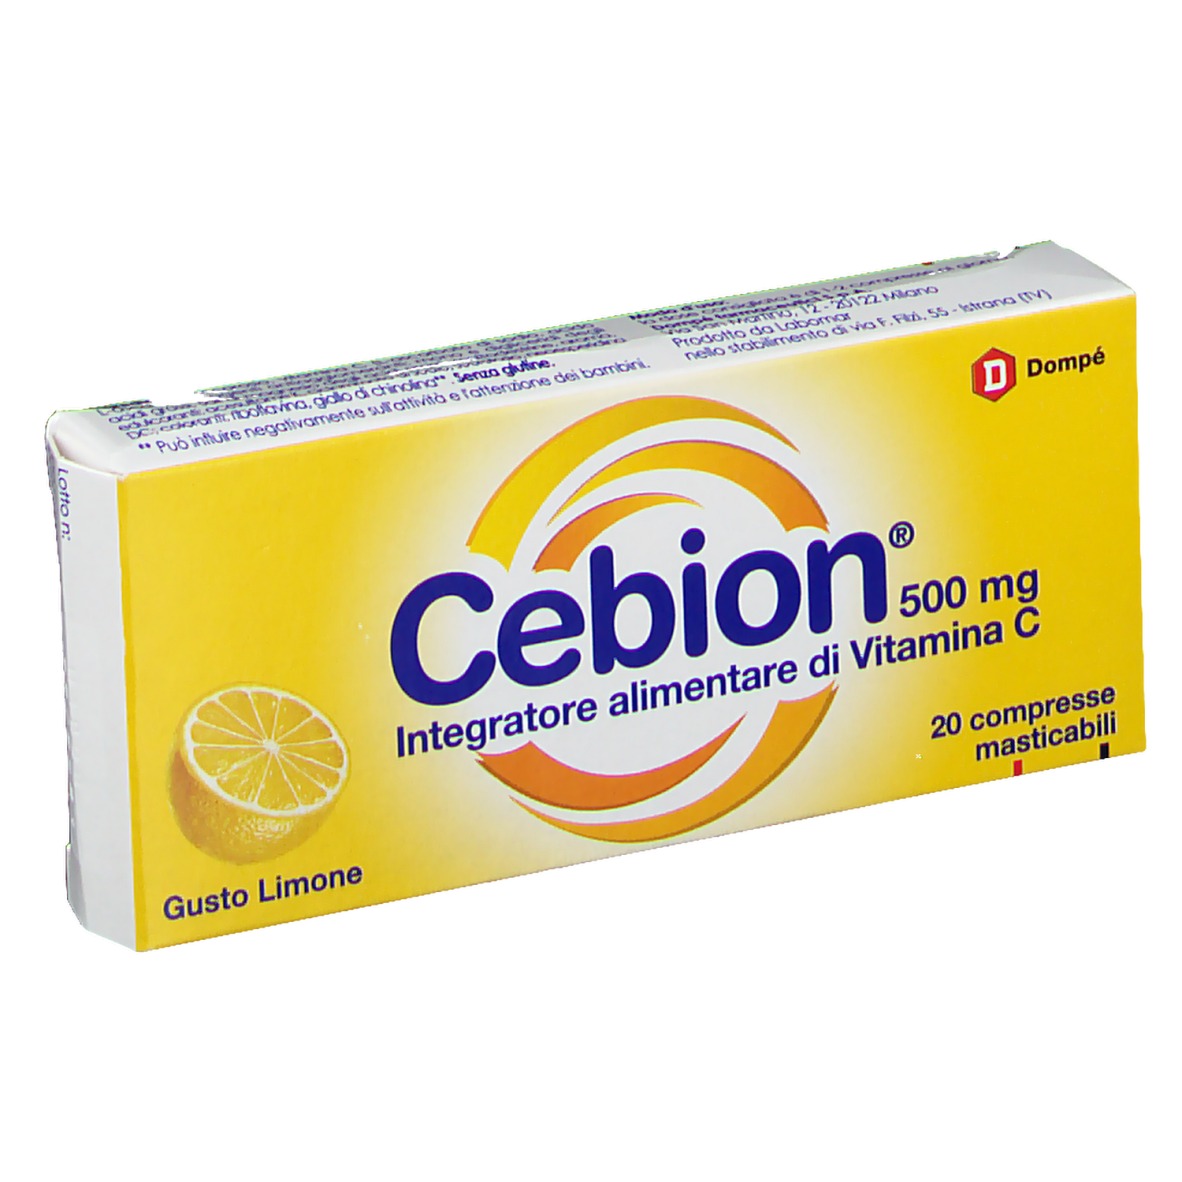 Image of Dompé Cebion 500mg Vitamina C Integratore Alimentare Senza Glutine 20 Compresse Masticabili Gusto Limone